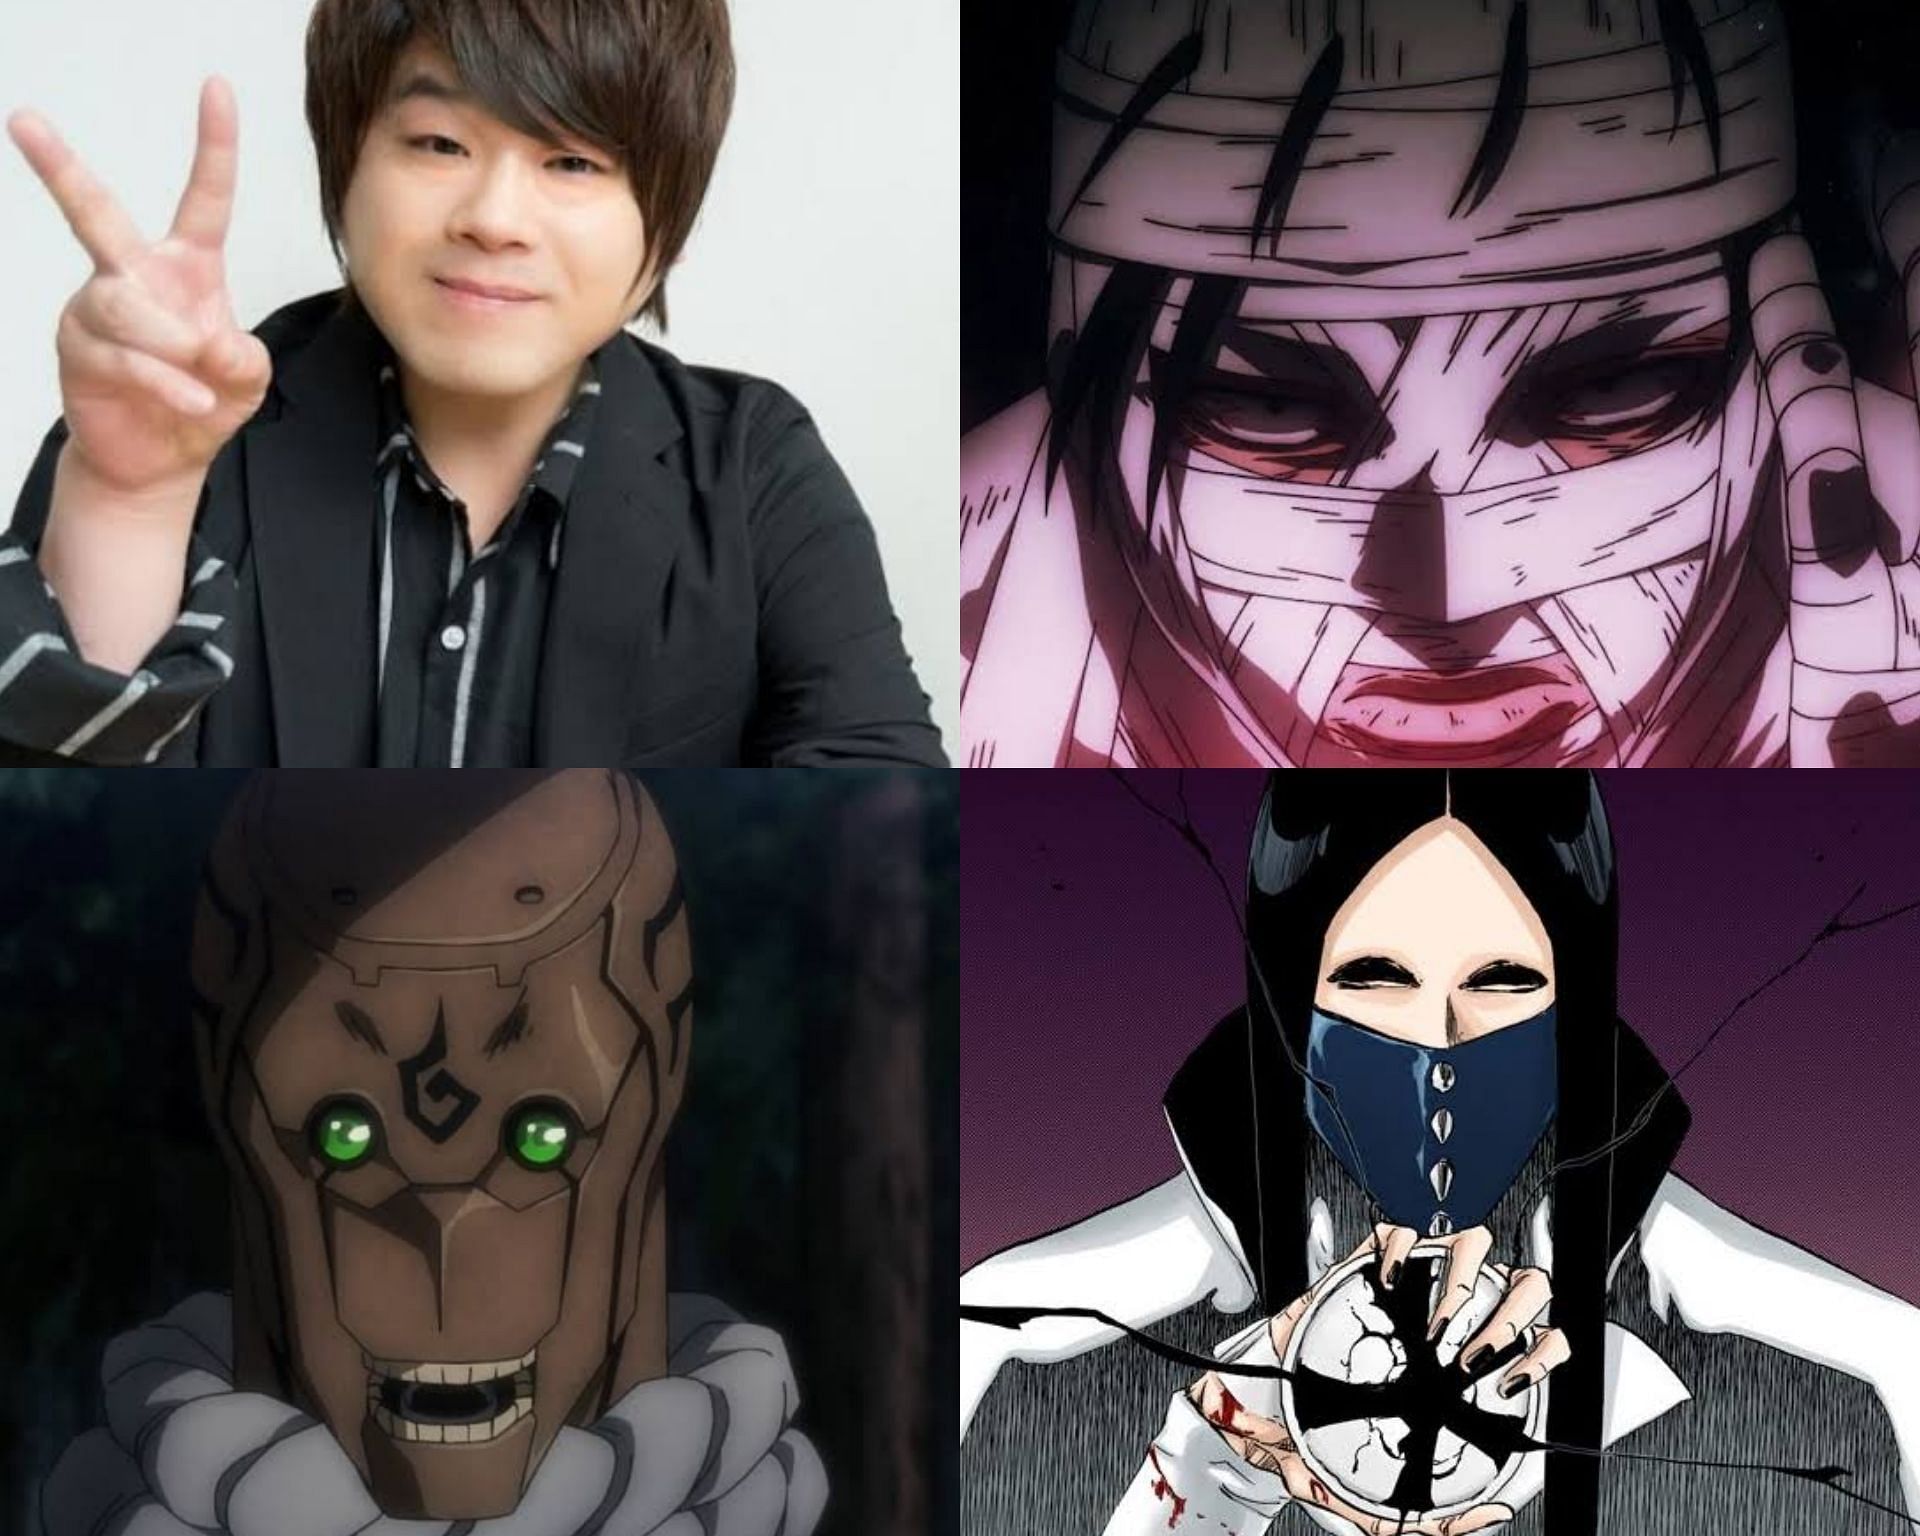 Gojo Satoru's seiyuu, Nakamura Yuichi, voiced Tesra, Nnoitra's